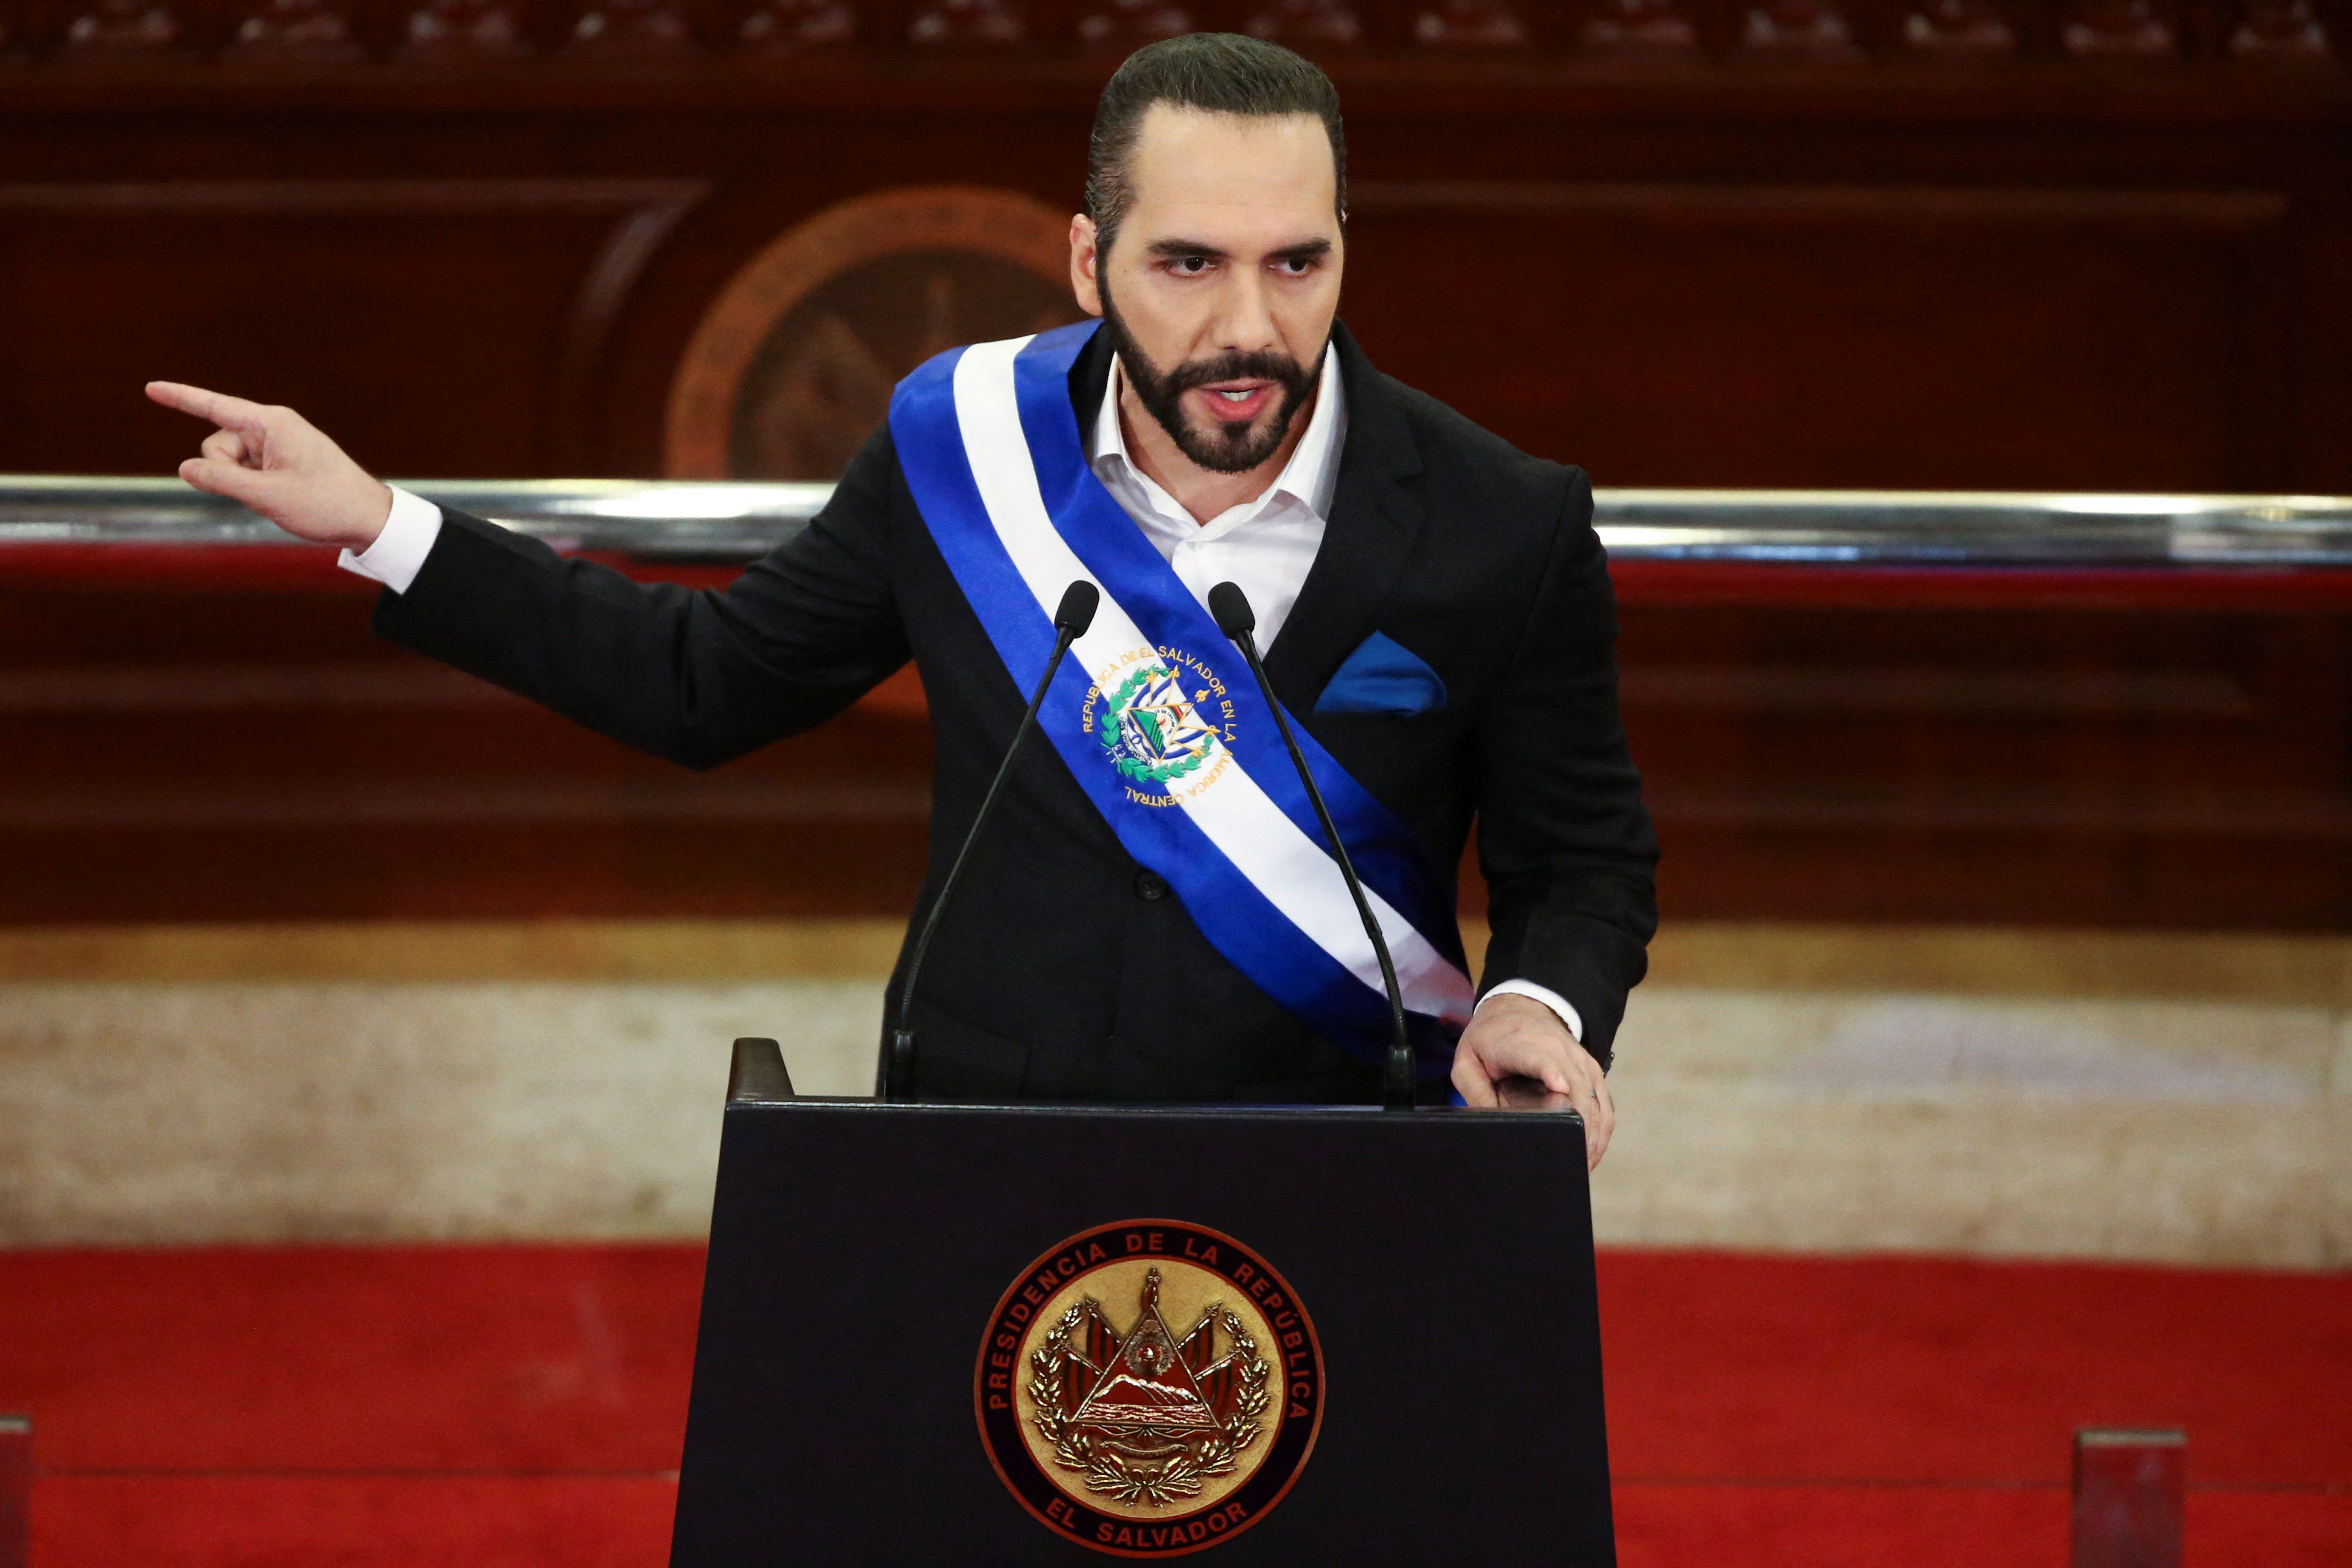 El presidente de El Salvador, Nayib Bukele, gesticula mientras pronuncia un discurso al país con motivo de su tercer año de mandato, en San Salvador, El Salvador, 1 de junio de 2022. REUTERS/Jose Cabezas